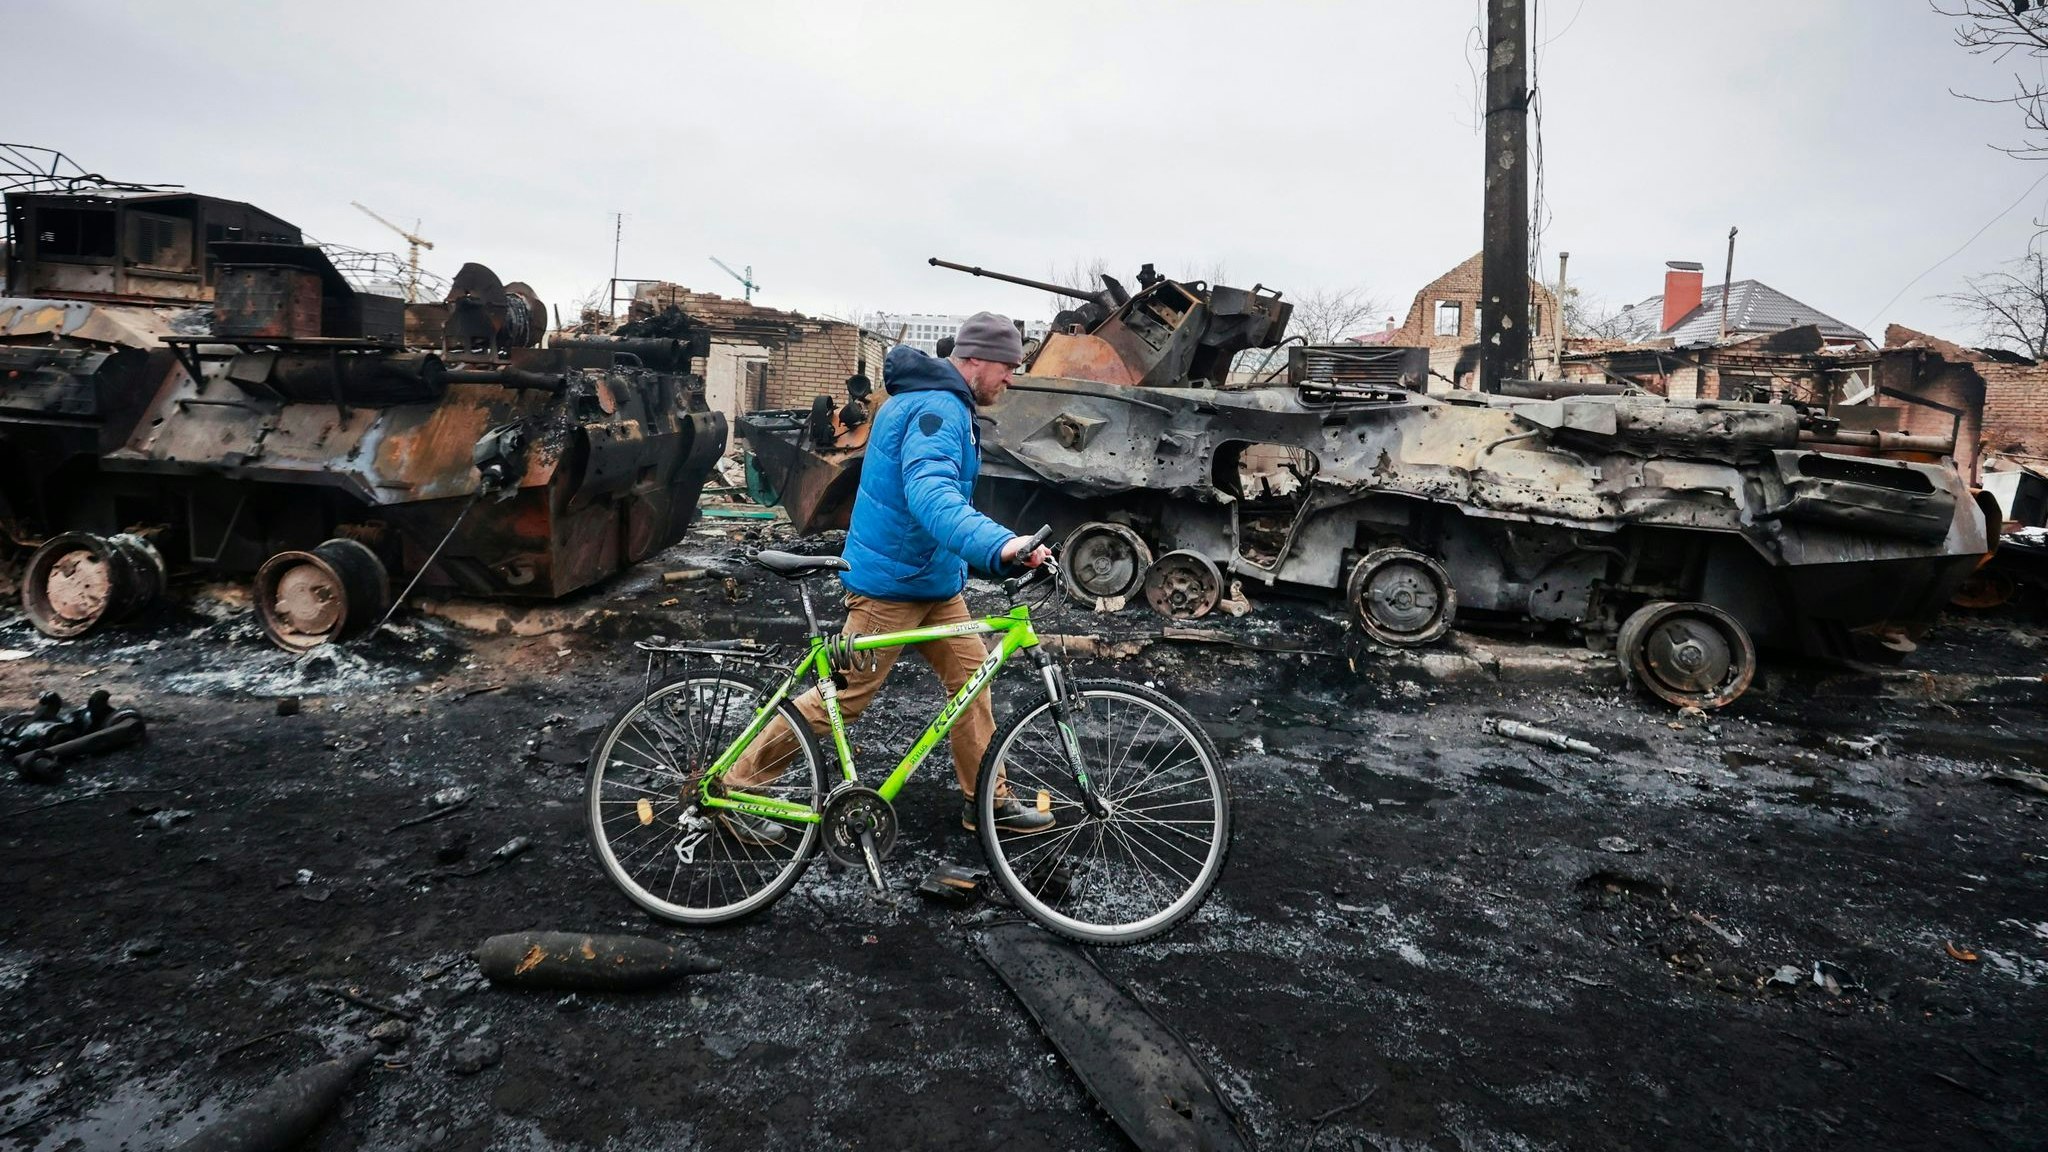 Trümmer: In der Nacht gab es mehrere Luftangriffe auf Großstädte in der Ukraine. Foto: dpa/Nuzhnenko/AP